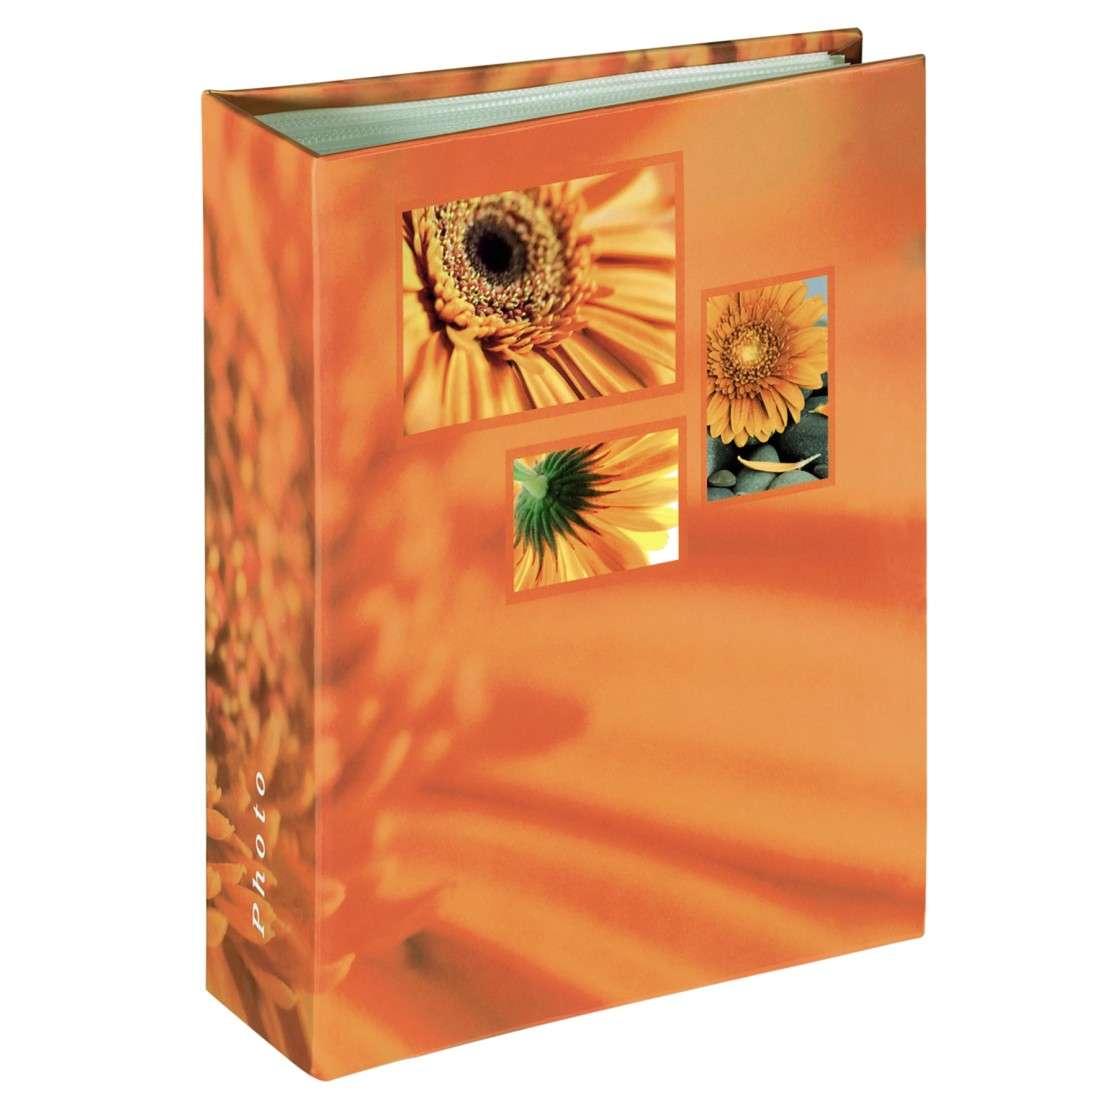 Minimax-Album Singo, für 100 Fotos im Format 10x15 cm, Orange